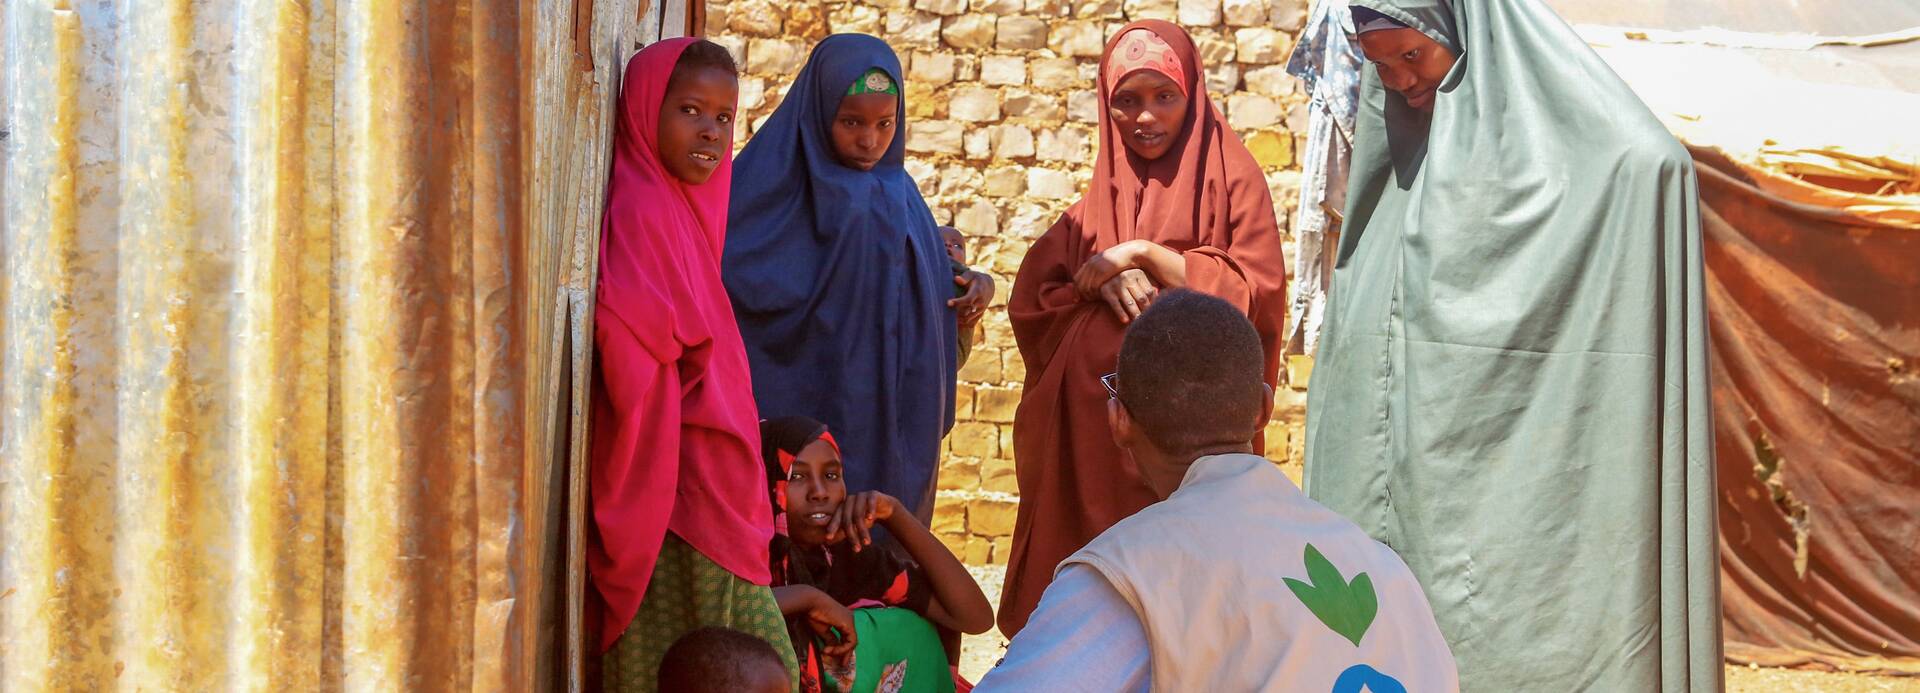 Ein Mitarbeiter von Aktion gegen den Hunger ist im Gespräch mit Frauen und Kindern aus Somalia – alle suchen Schatten hinter einer Wellblechwand.